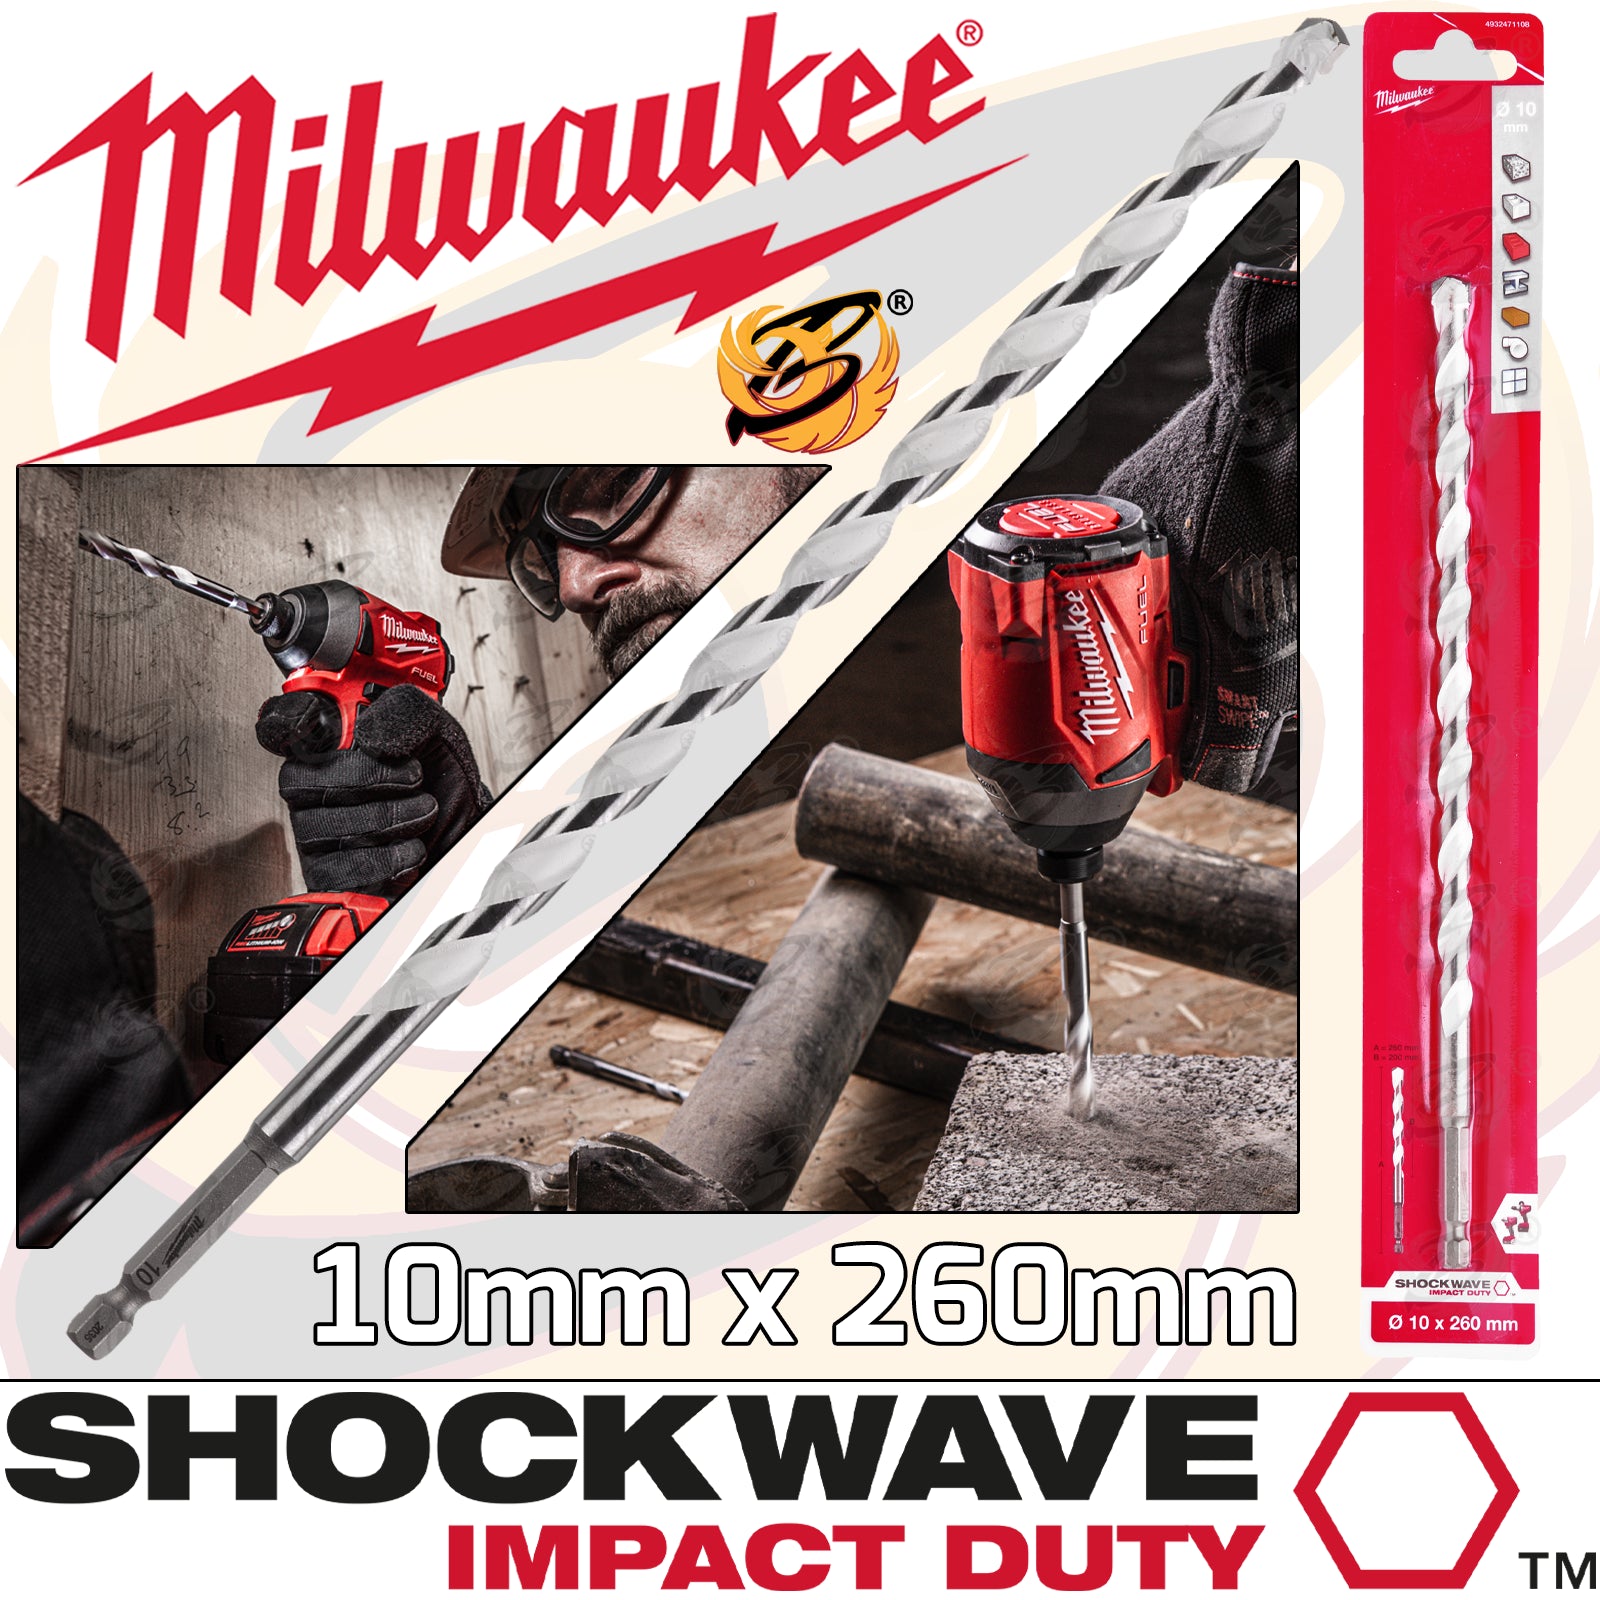 MILWAUKEE 10mm x 260mm MULTI MATERIAL DRILL BIT